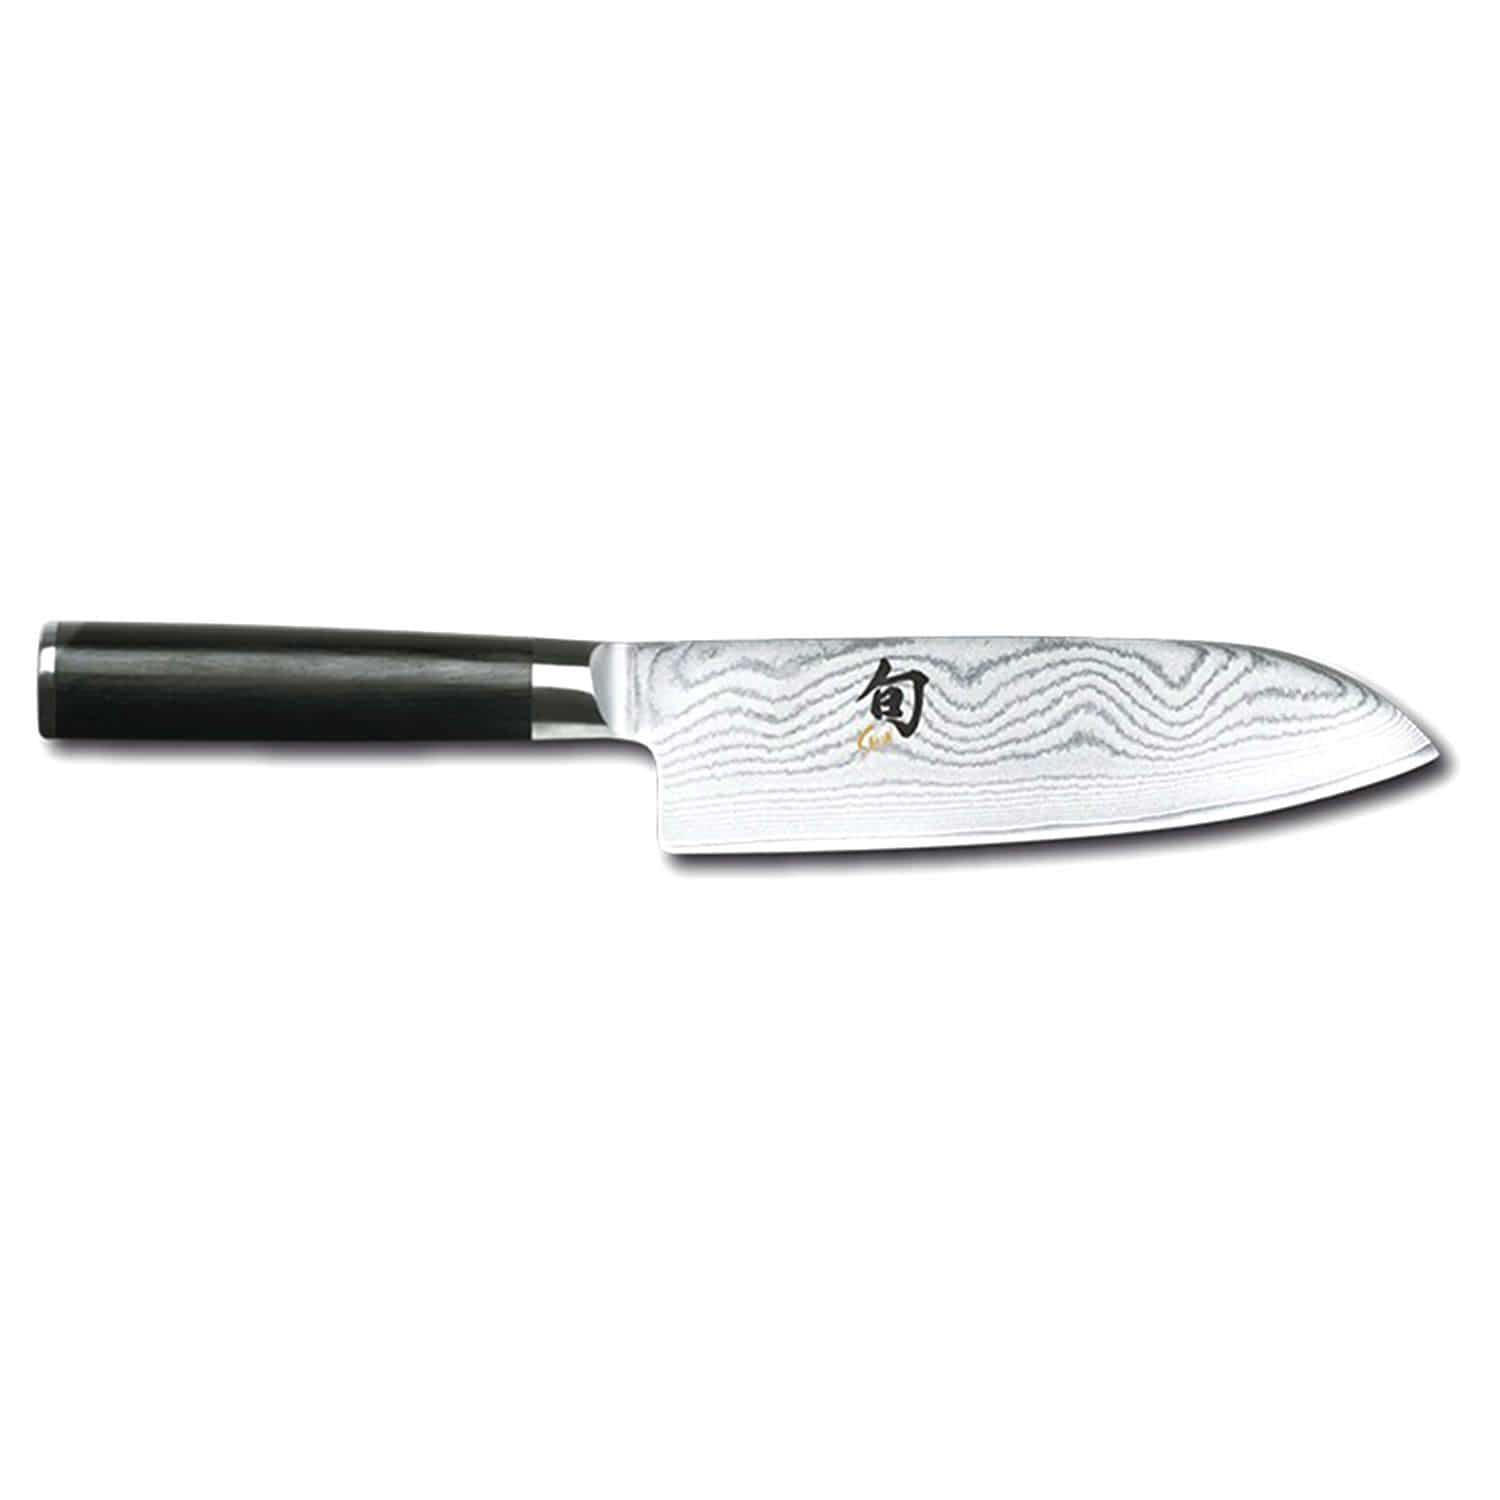 Kai Shun 6 Santoku Knife - Black, 16 cm - DM-0702 - Jashanmal Home